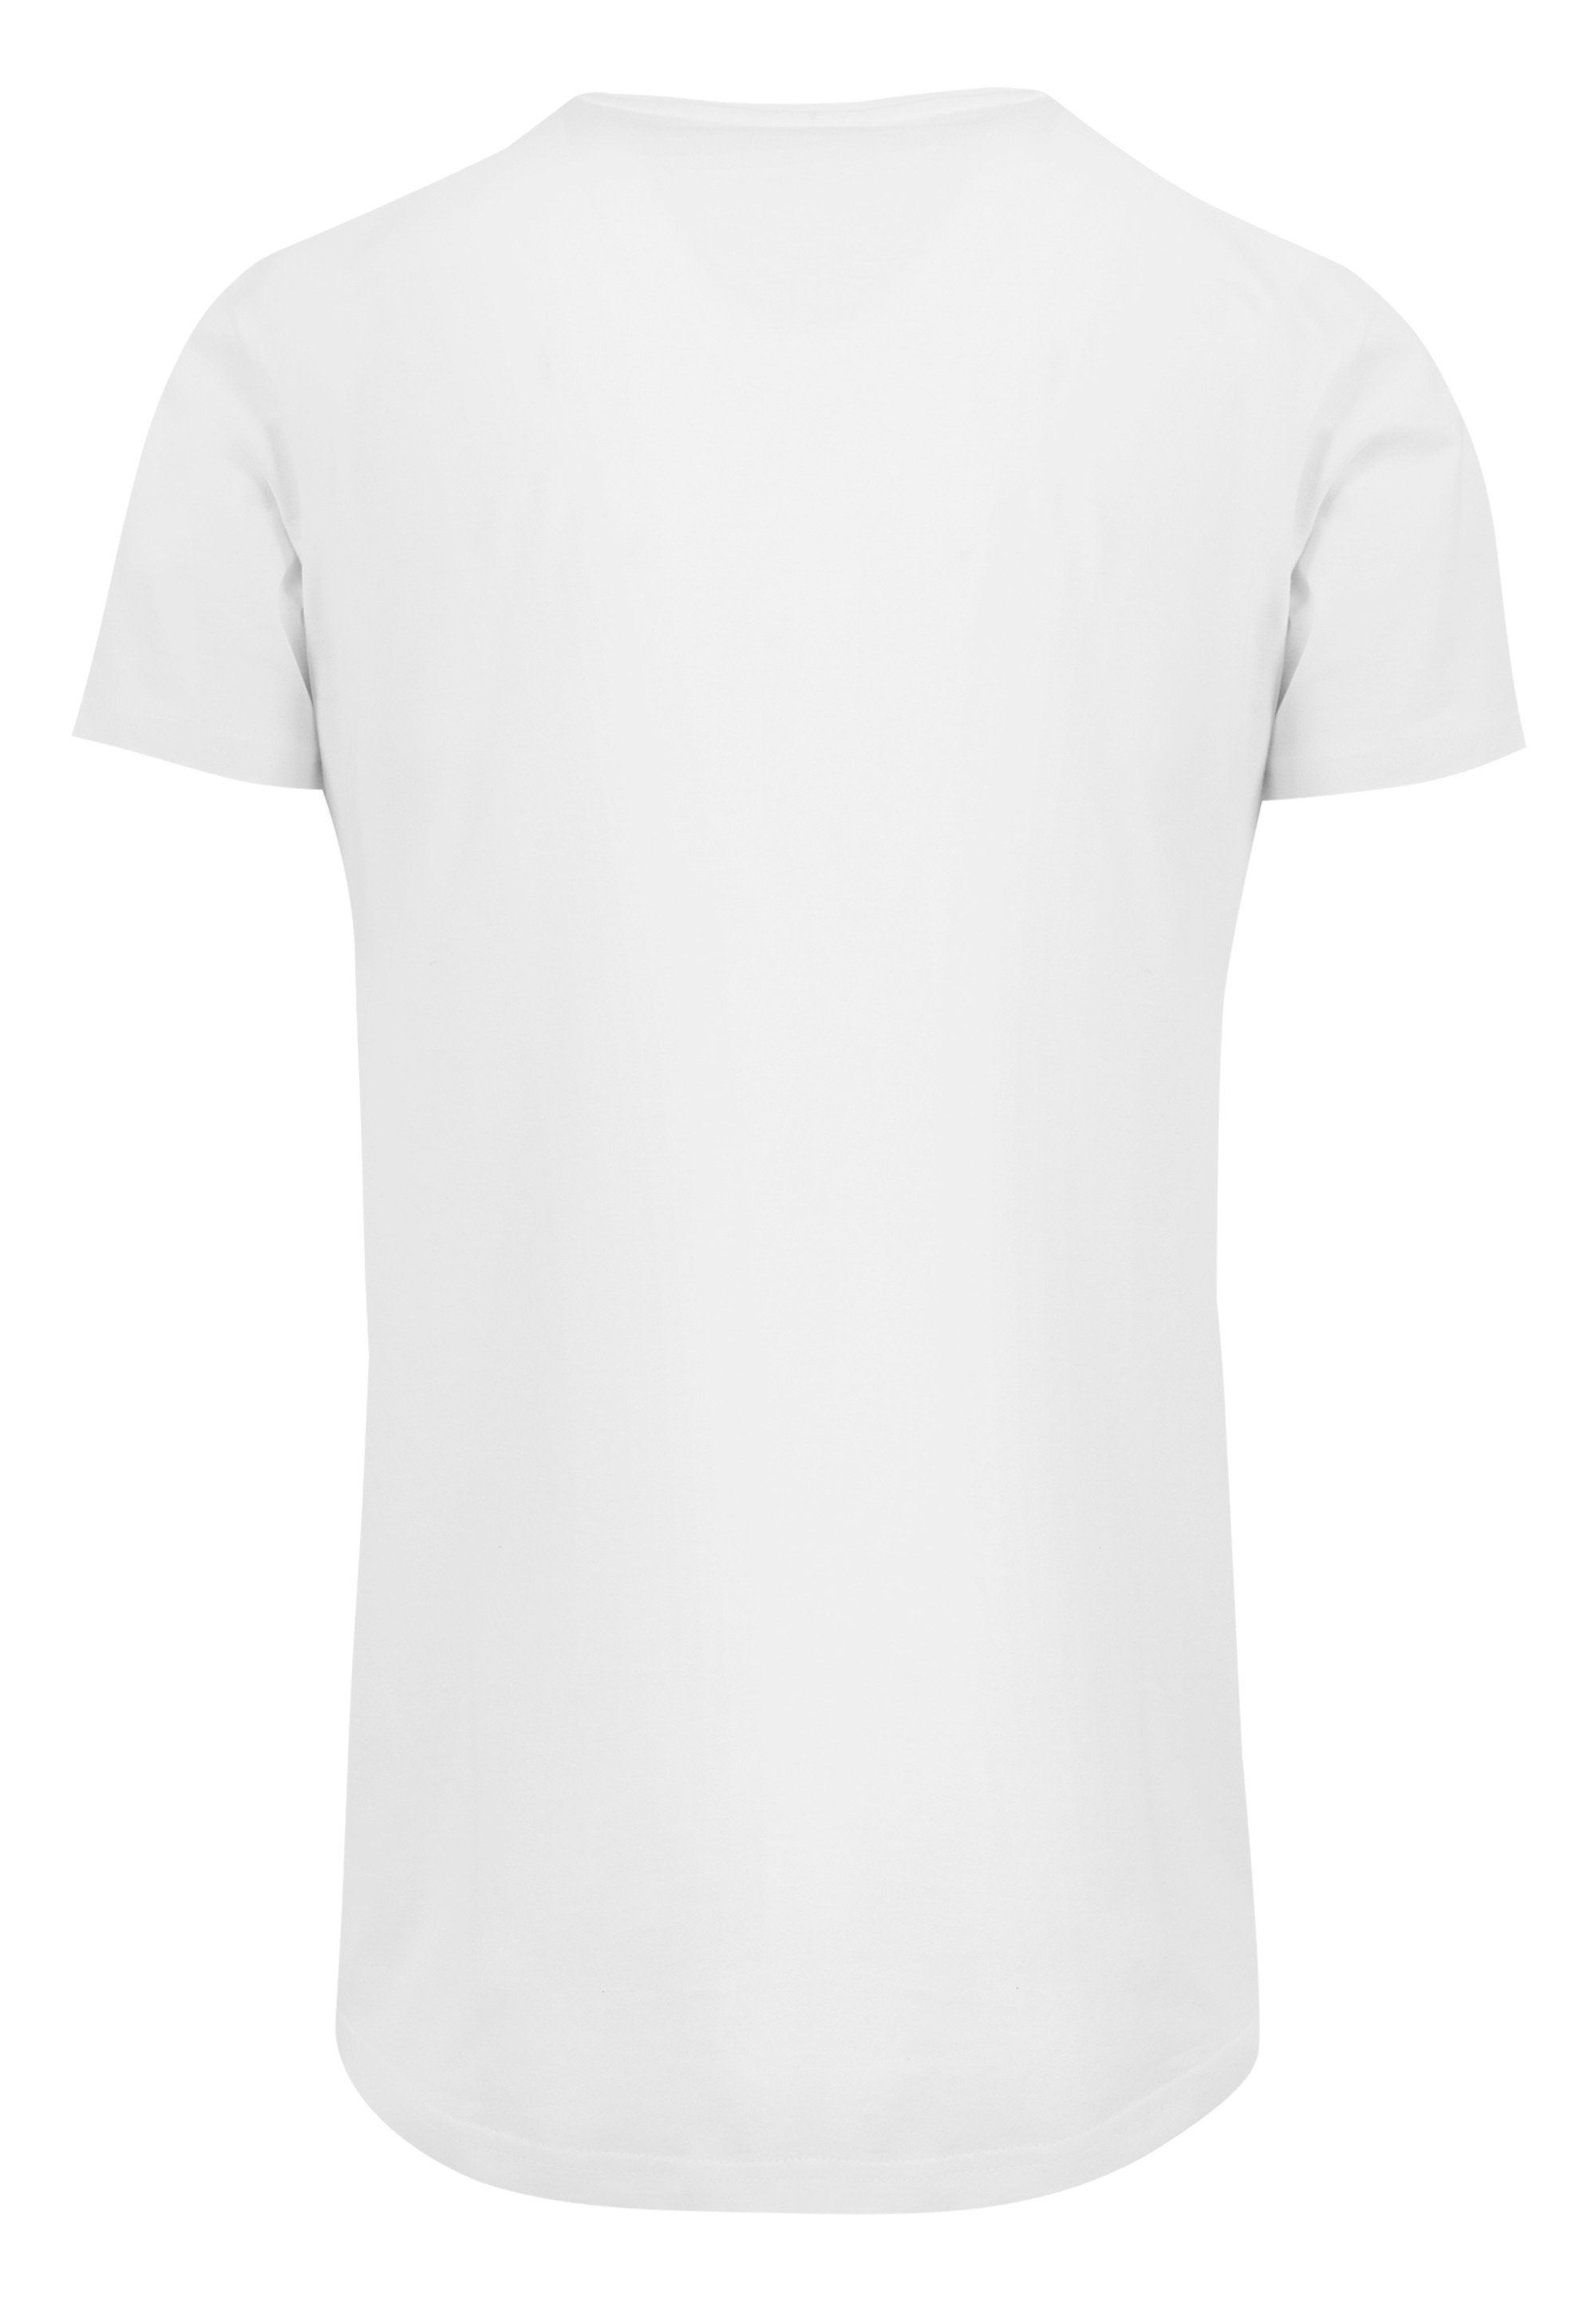 Winnie Pooh' T-Shirt F4NT4STIC Print weiß